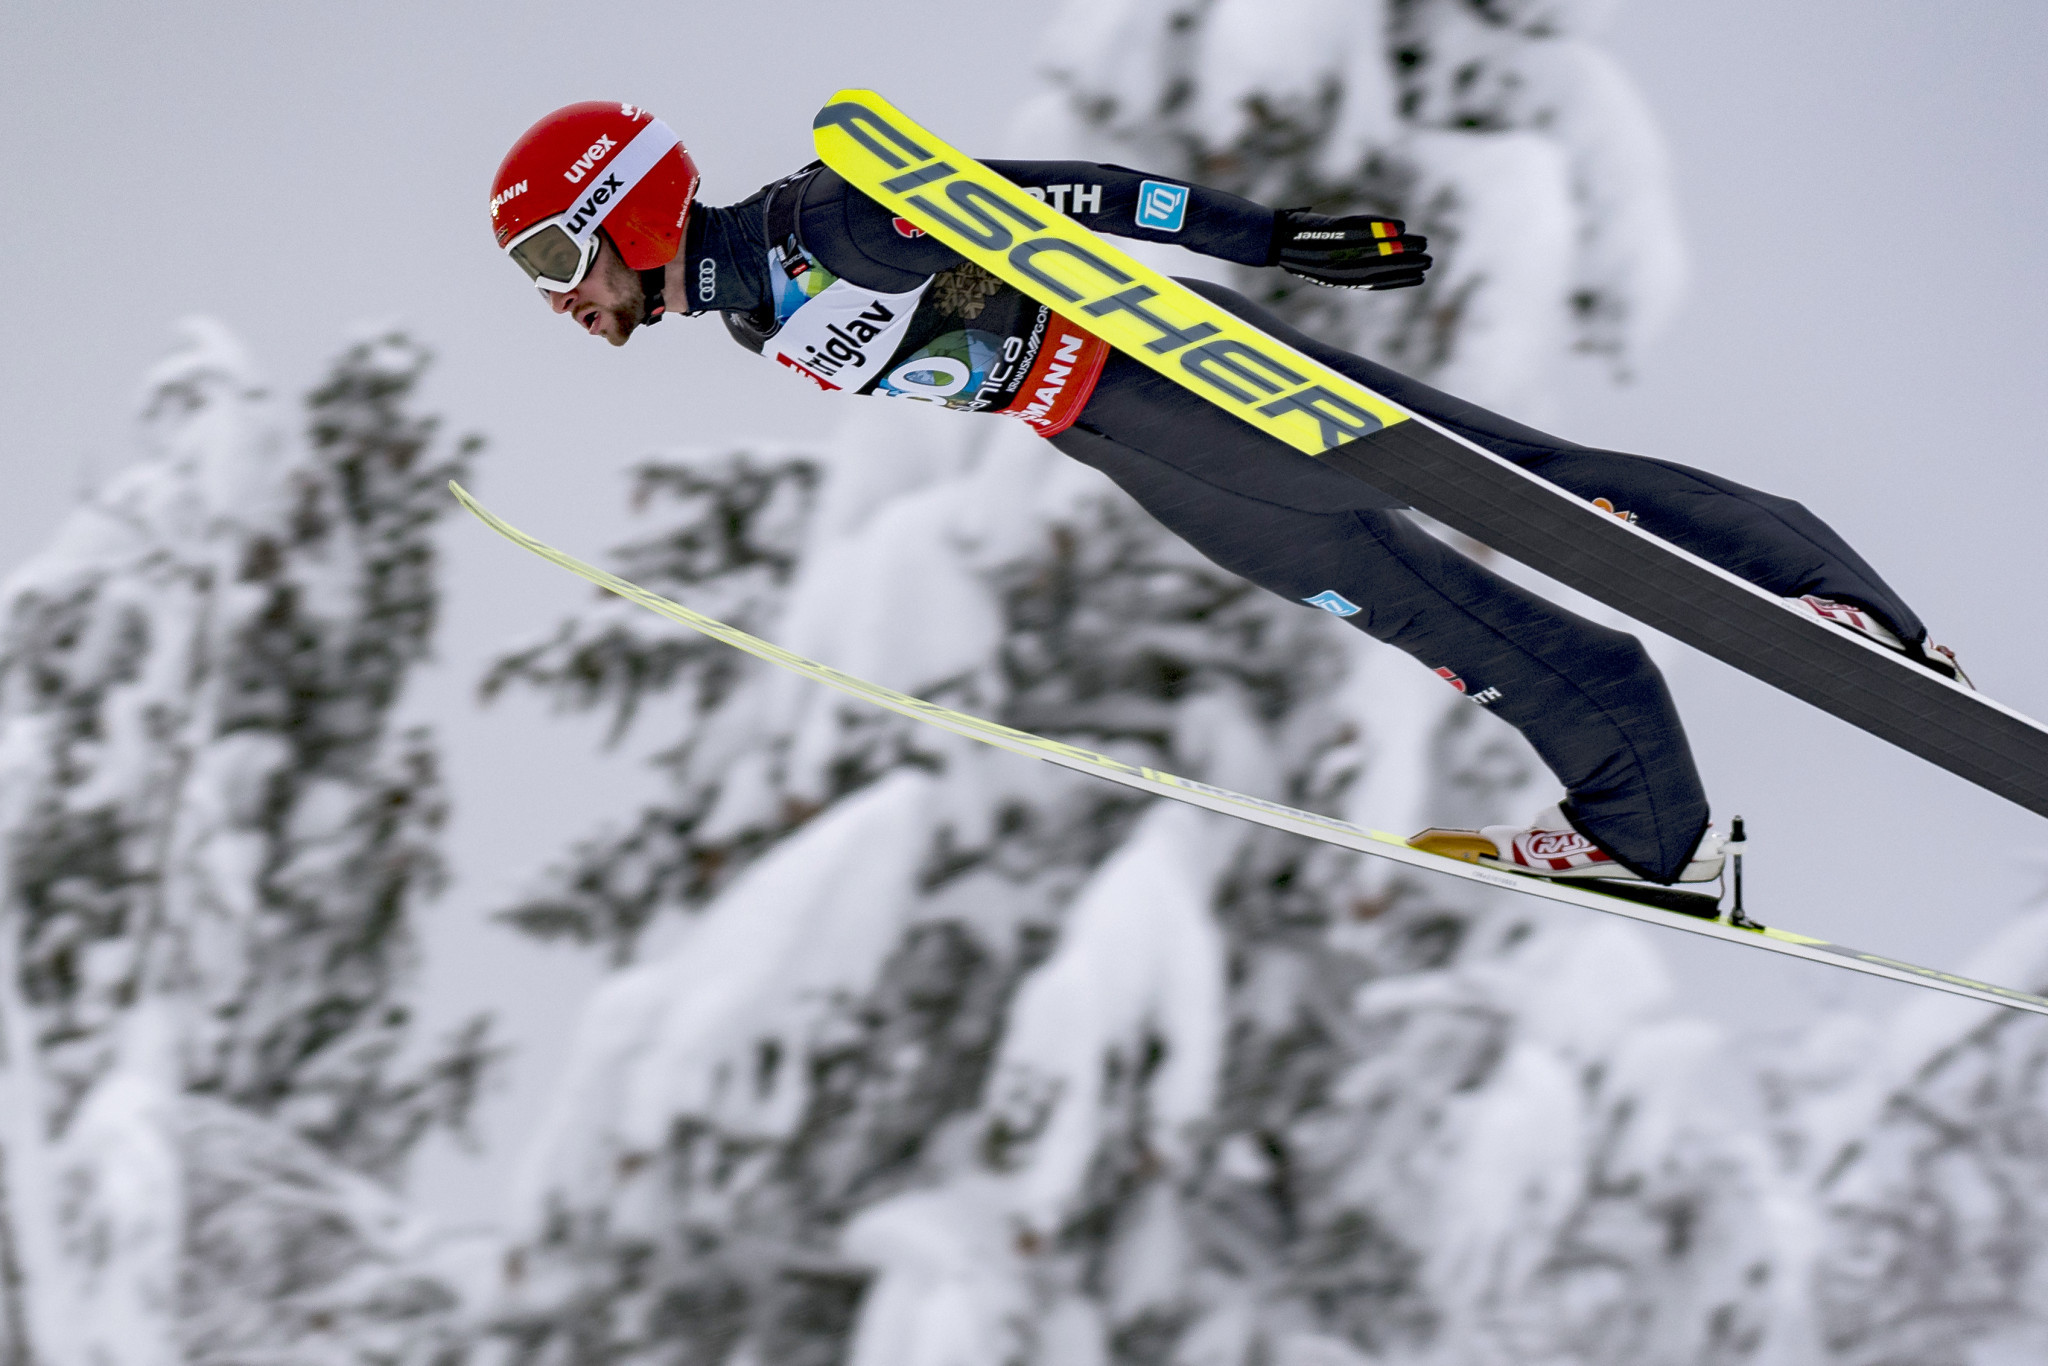 Germany's Eisenbichler tops Ski Flying World Championships qualification